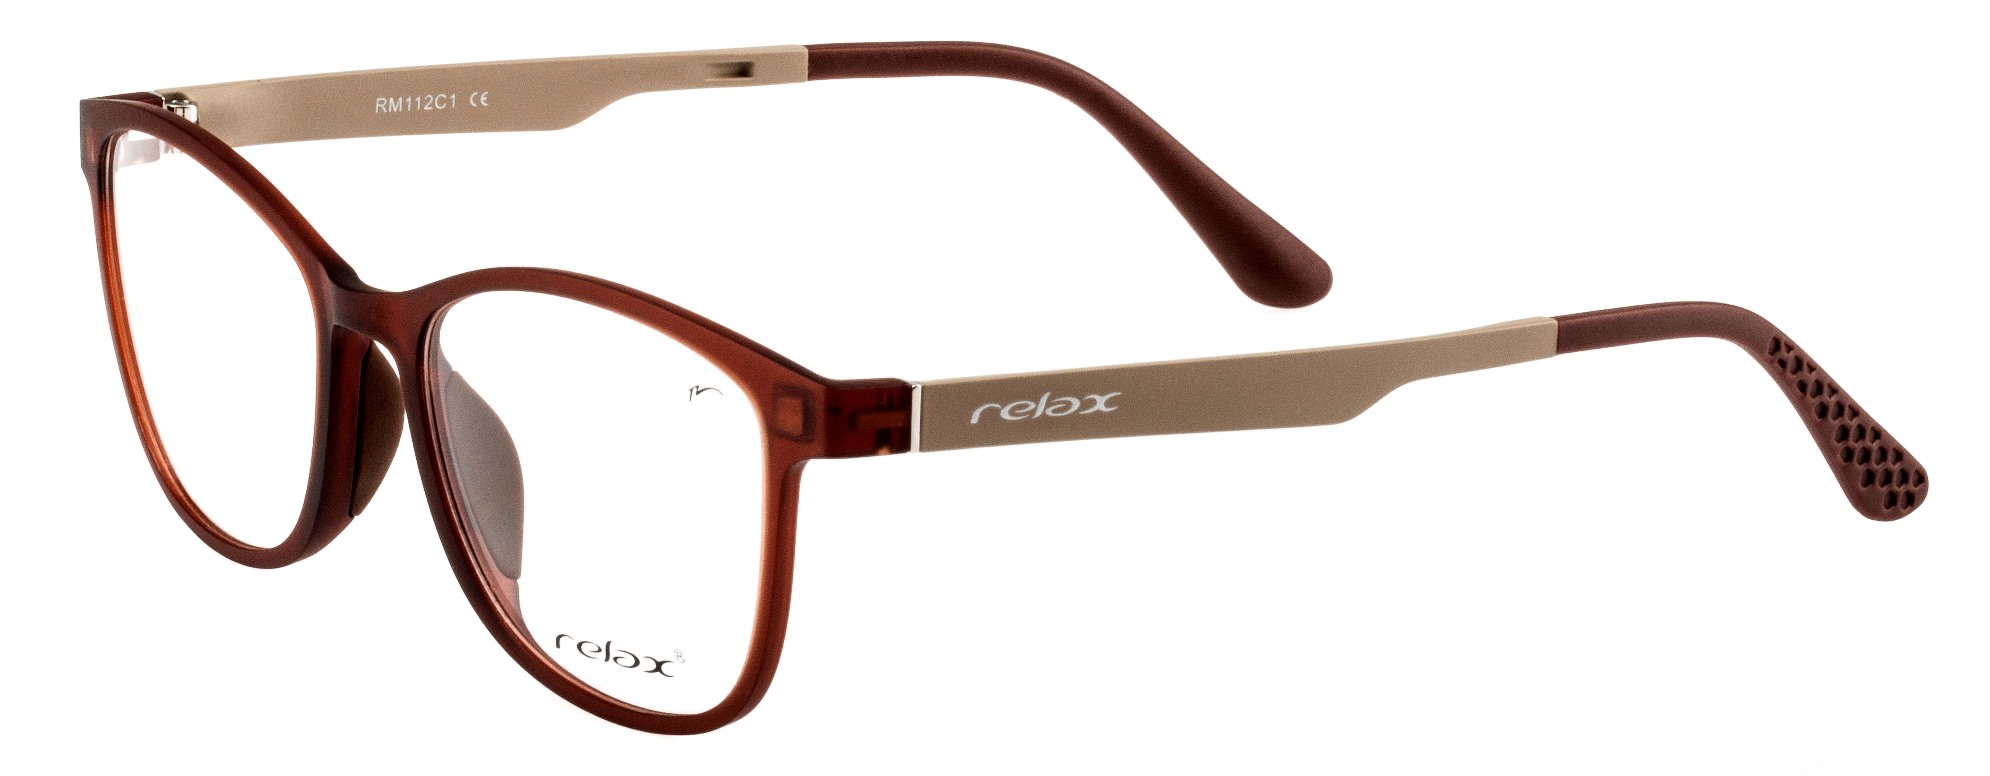 Optical frames Relax Ocun RM112C1